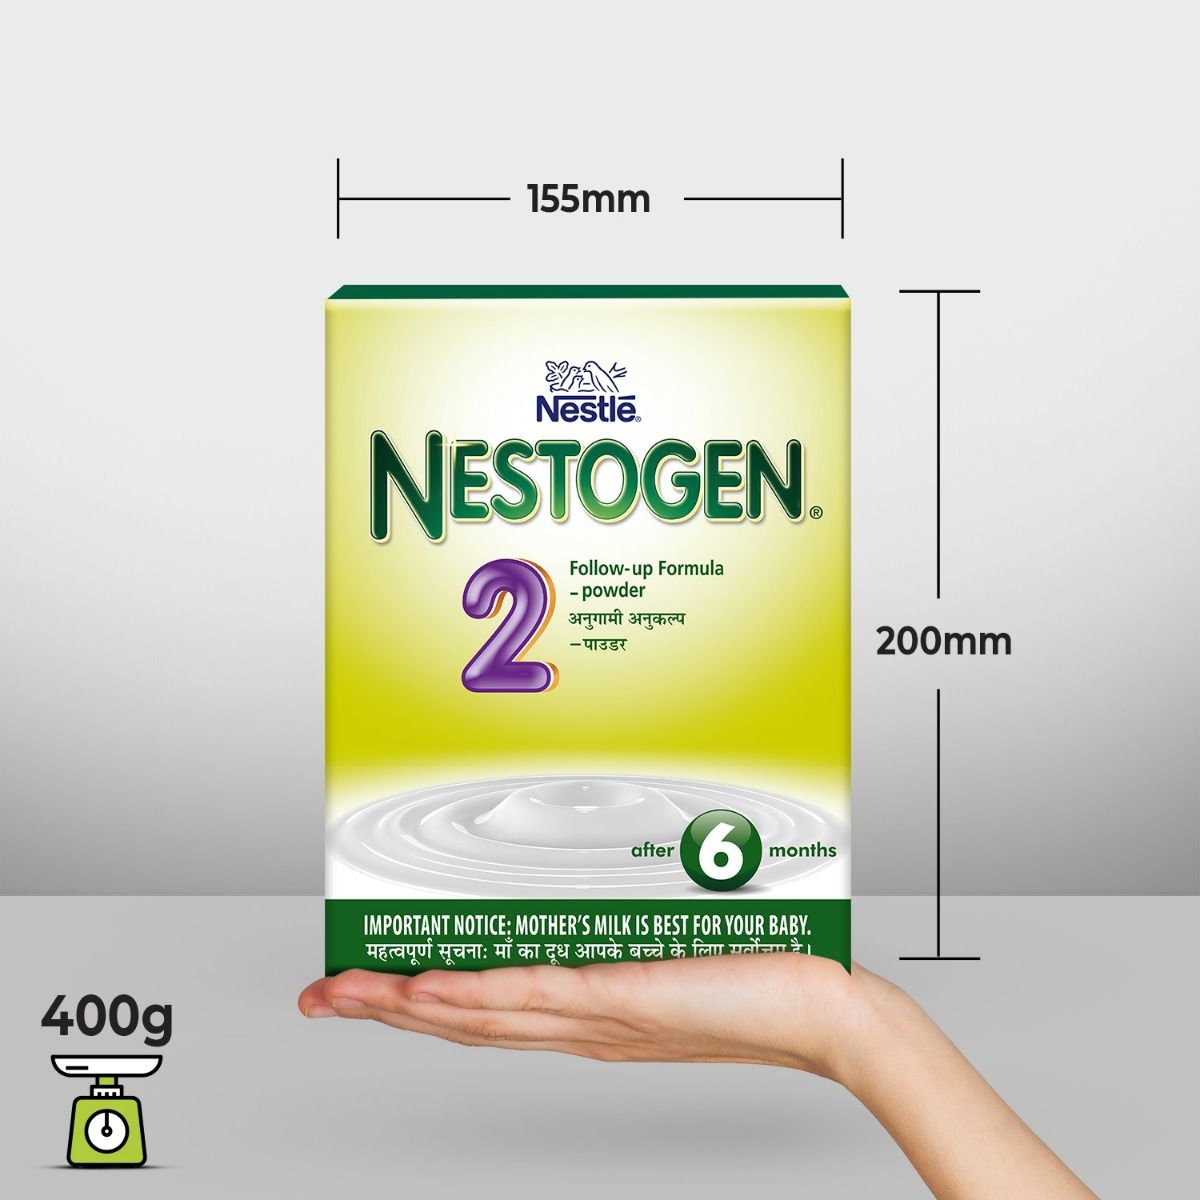 Nestle Nestogen Infant Formula Stage 2 (After 6 Months) Powder, 400 gm Refill Pack, Pack of 1 